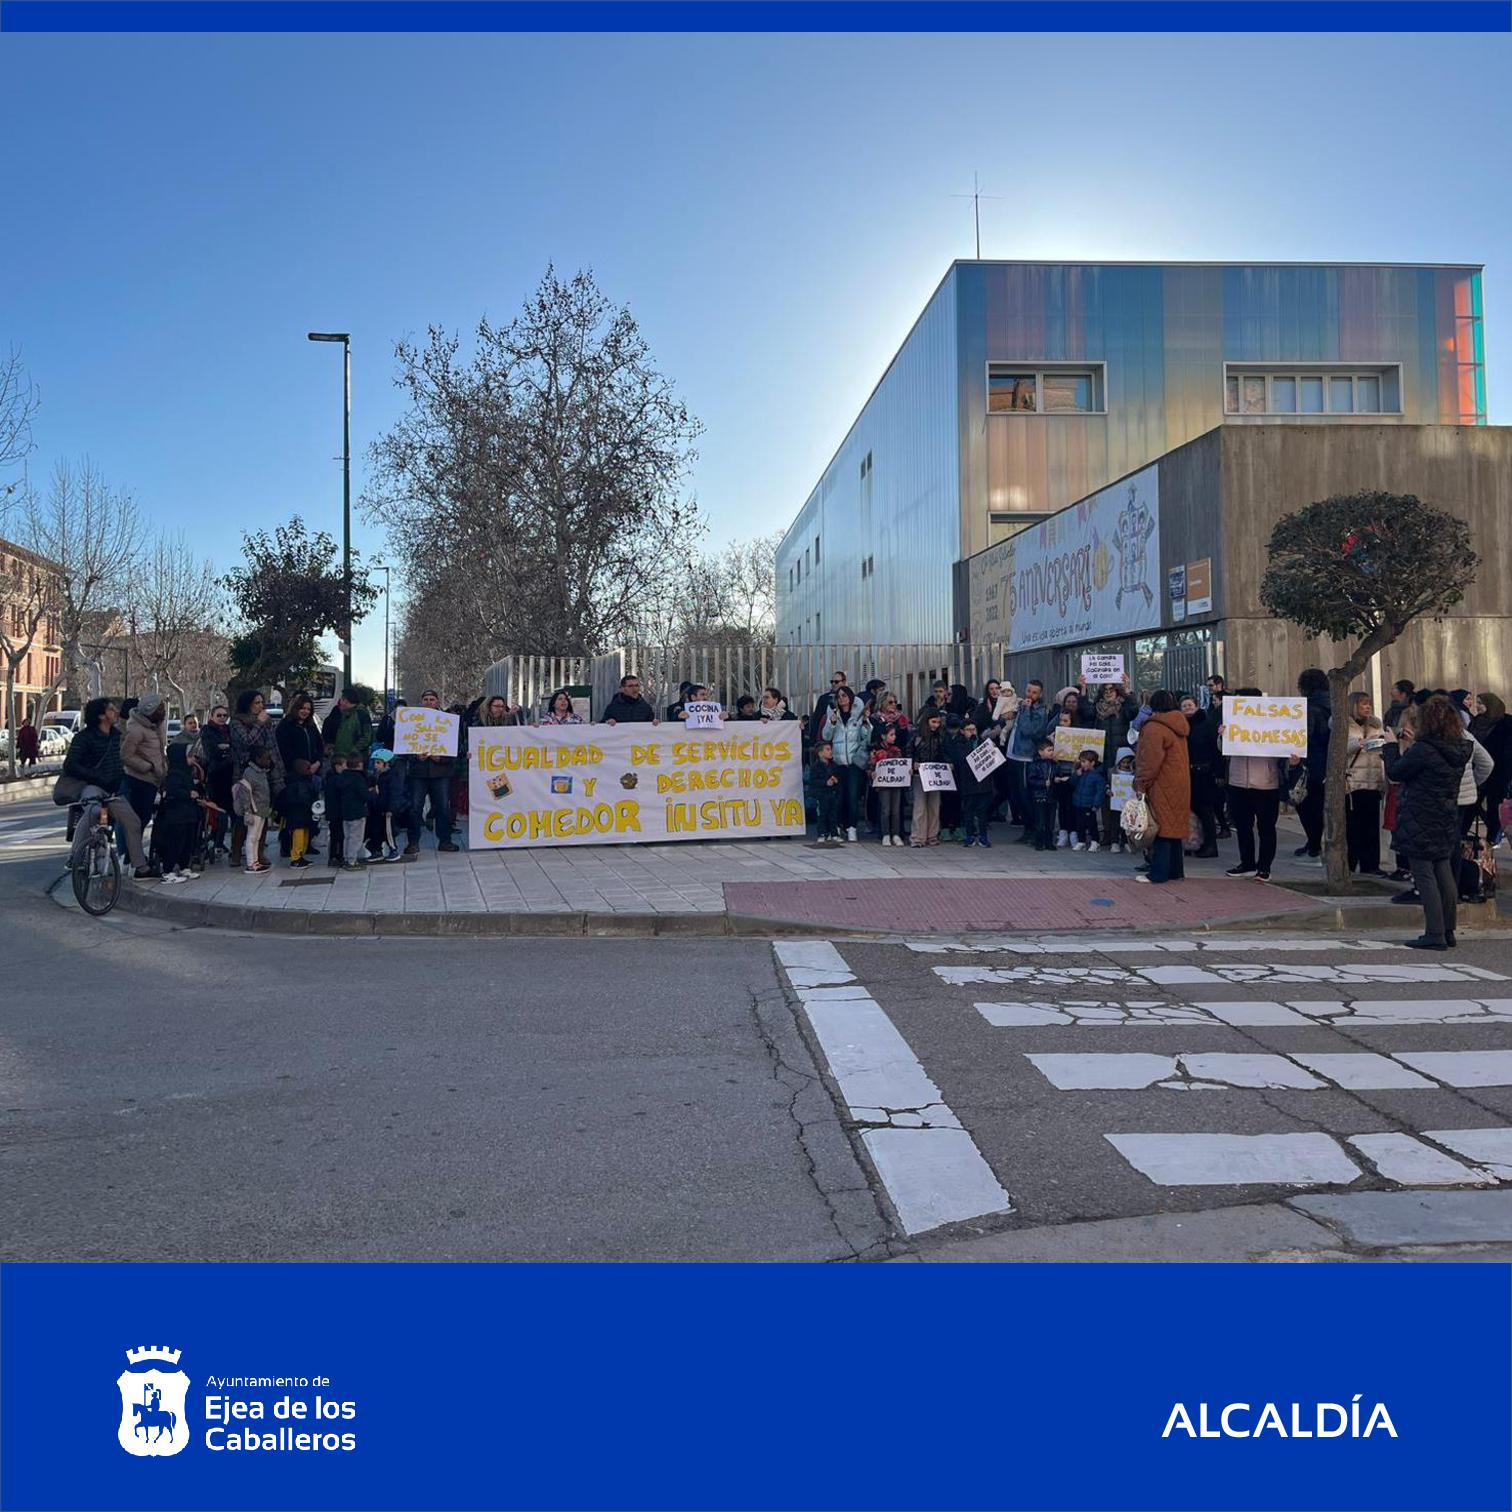 En este momento estás viendo El Ayuntamiento de Ejea apoya a la comunidad educativa del colegio Cervantes en su petición de reconversión del comedor escolar